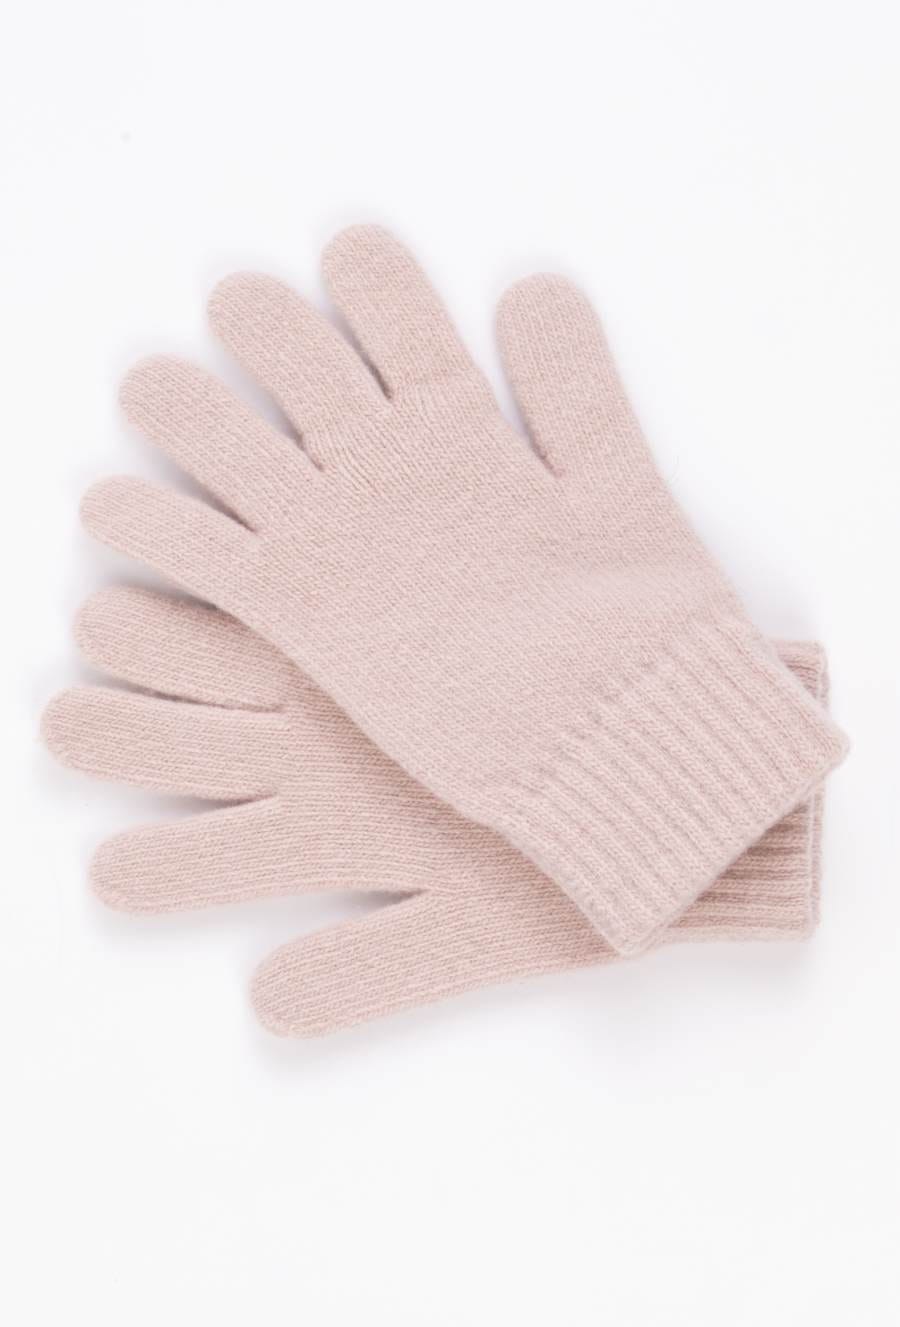 Kamea Woman's Gloves